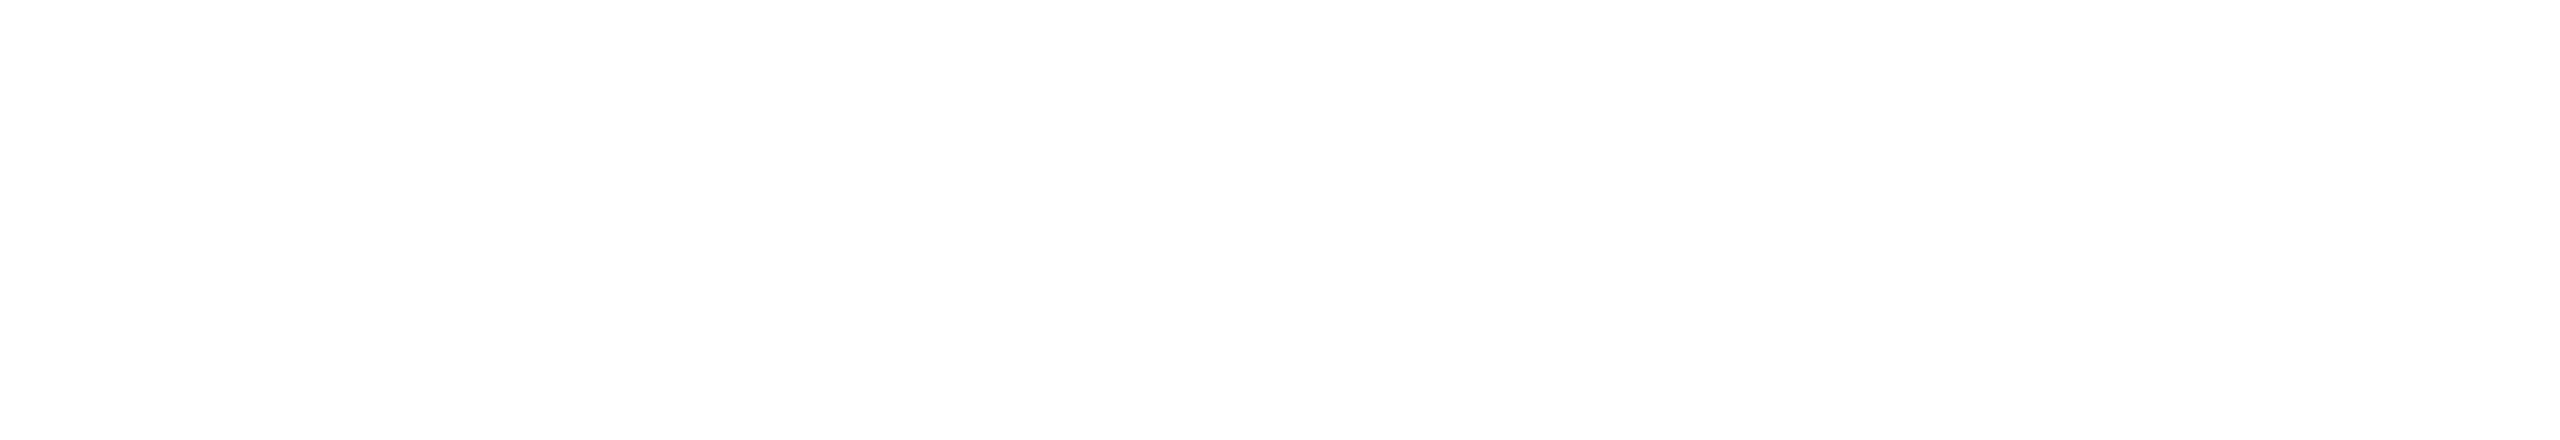 wisetack logo 